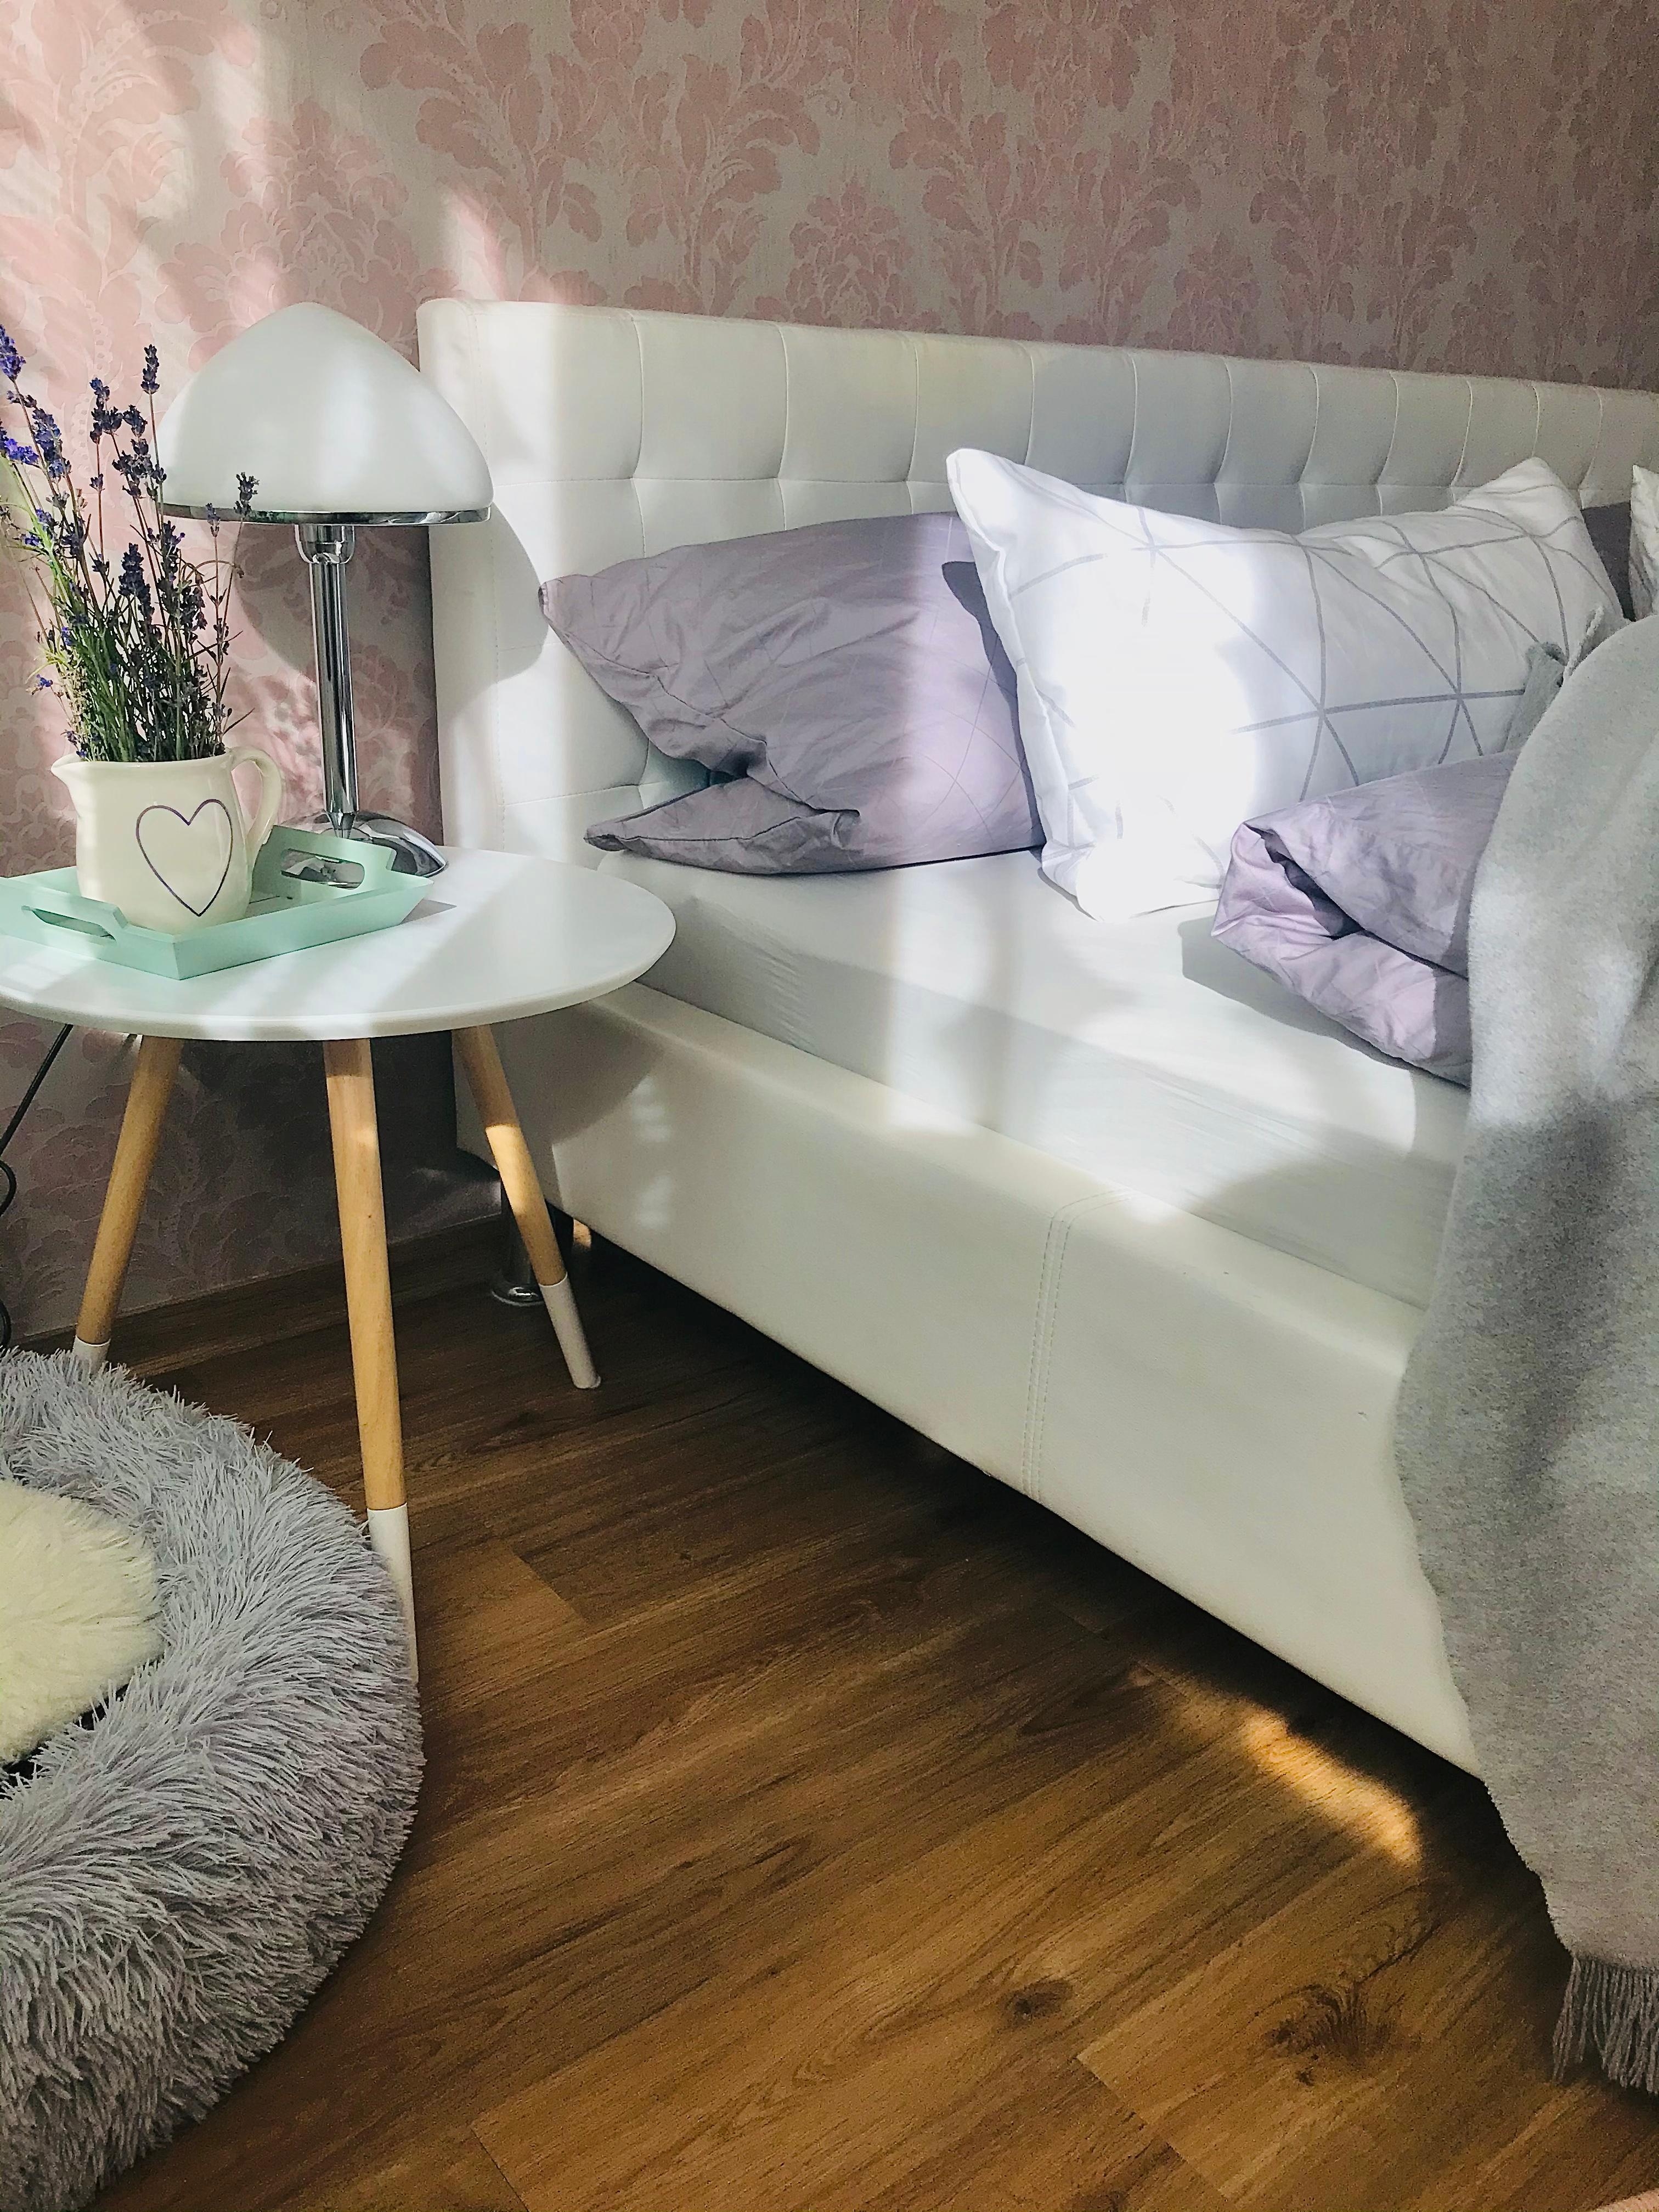 Schlafzimmer, mit Sonnenschein ☀️ 
#cozyplace #sleepwell #traumtapete 
#lavendelblueten 🤍